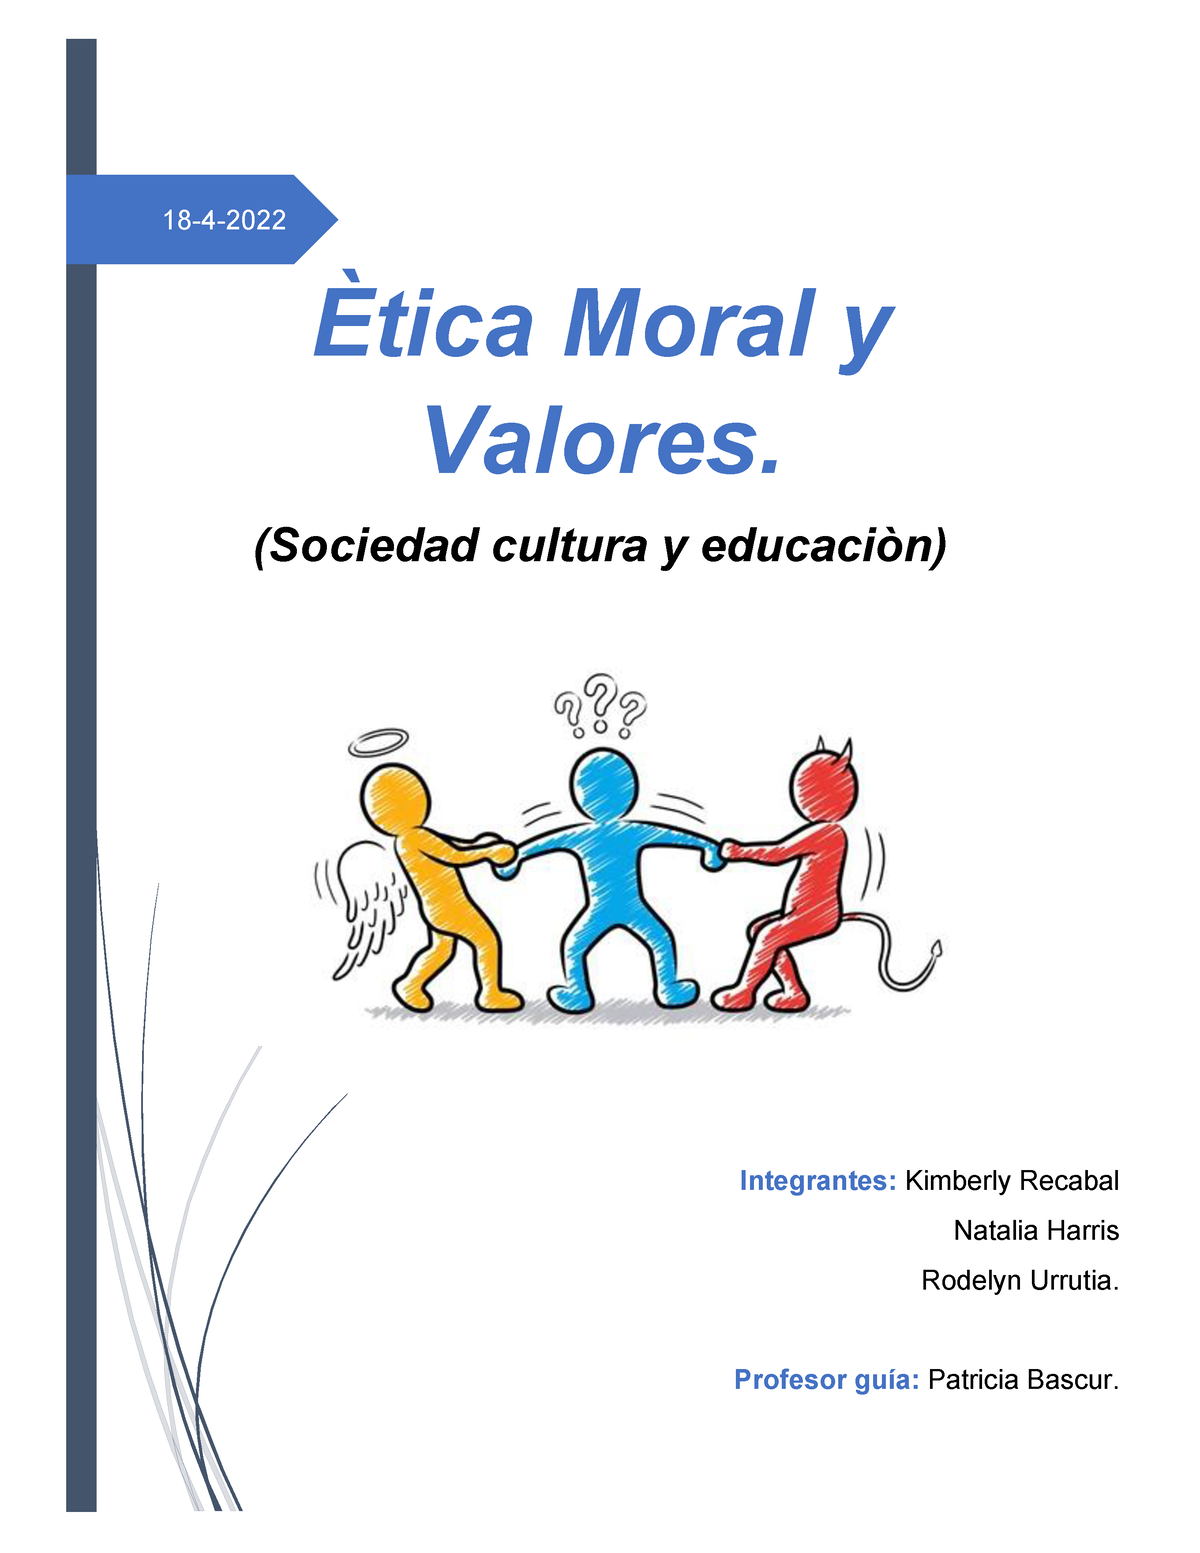 Etica Moral Y Valores Psico 18 4 2022 Ètica Moral Y Valores Sociedad Cultura Y Educaciòn 5845